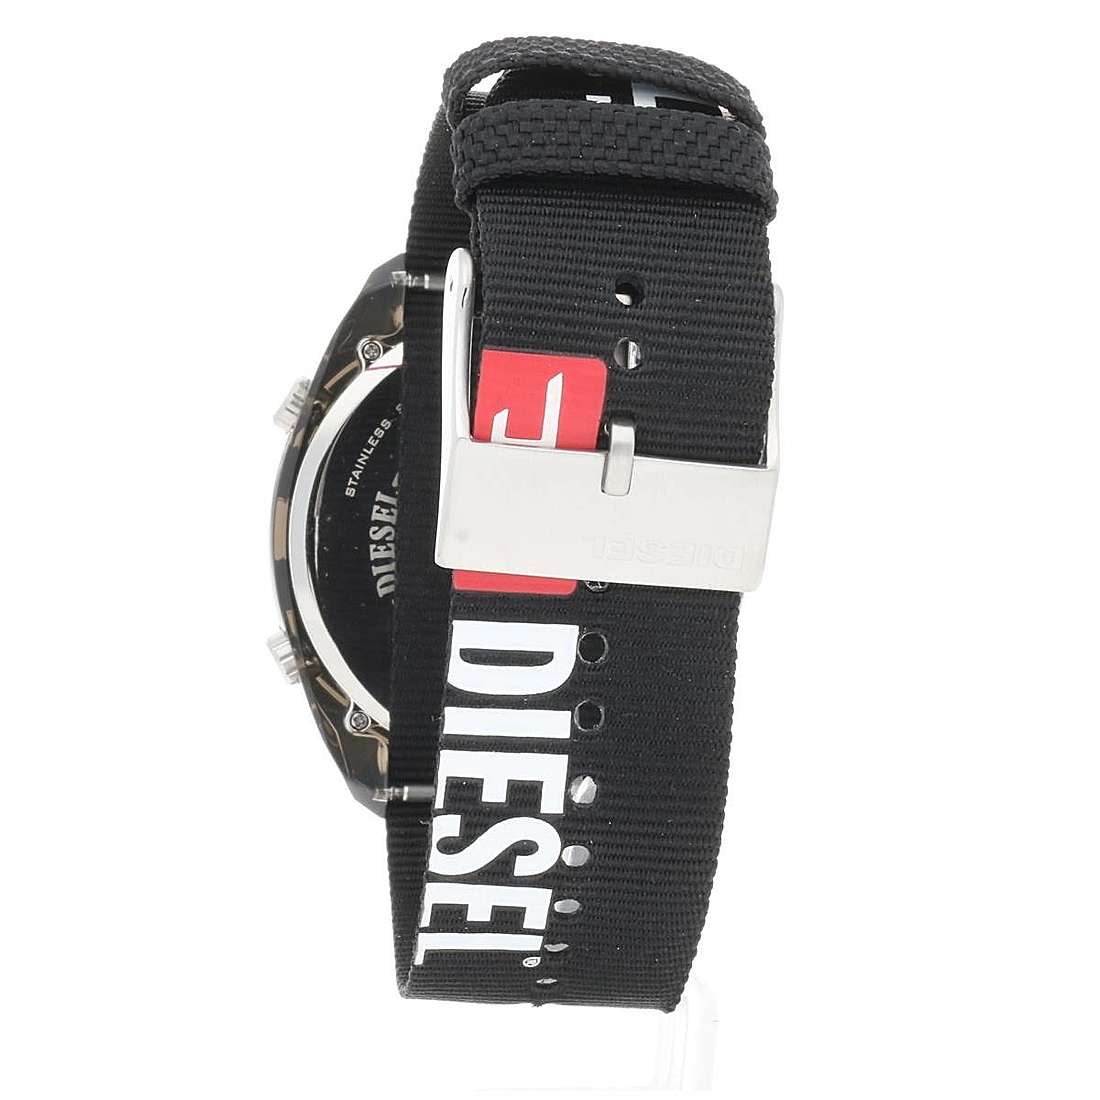 Diesel digitals digital man Diesel DZ1914 Crusher watch